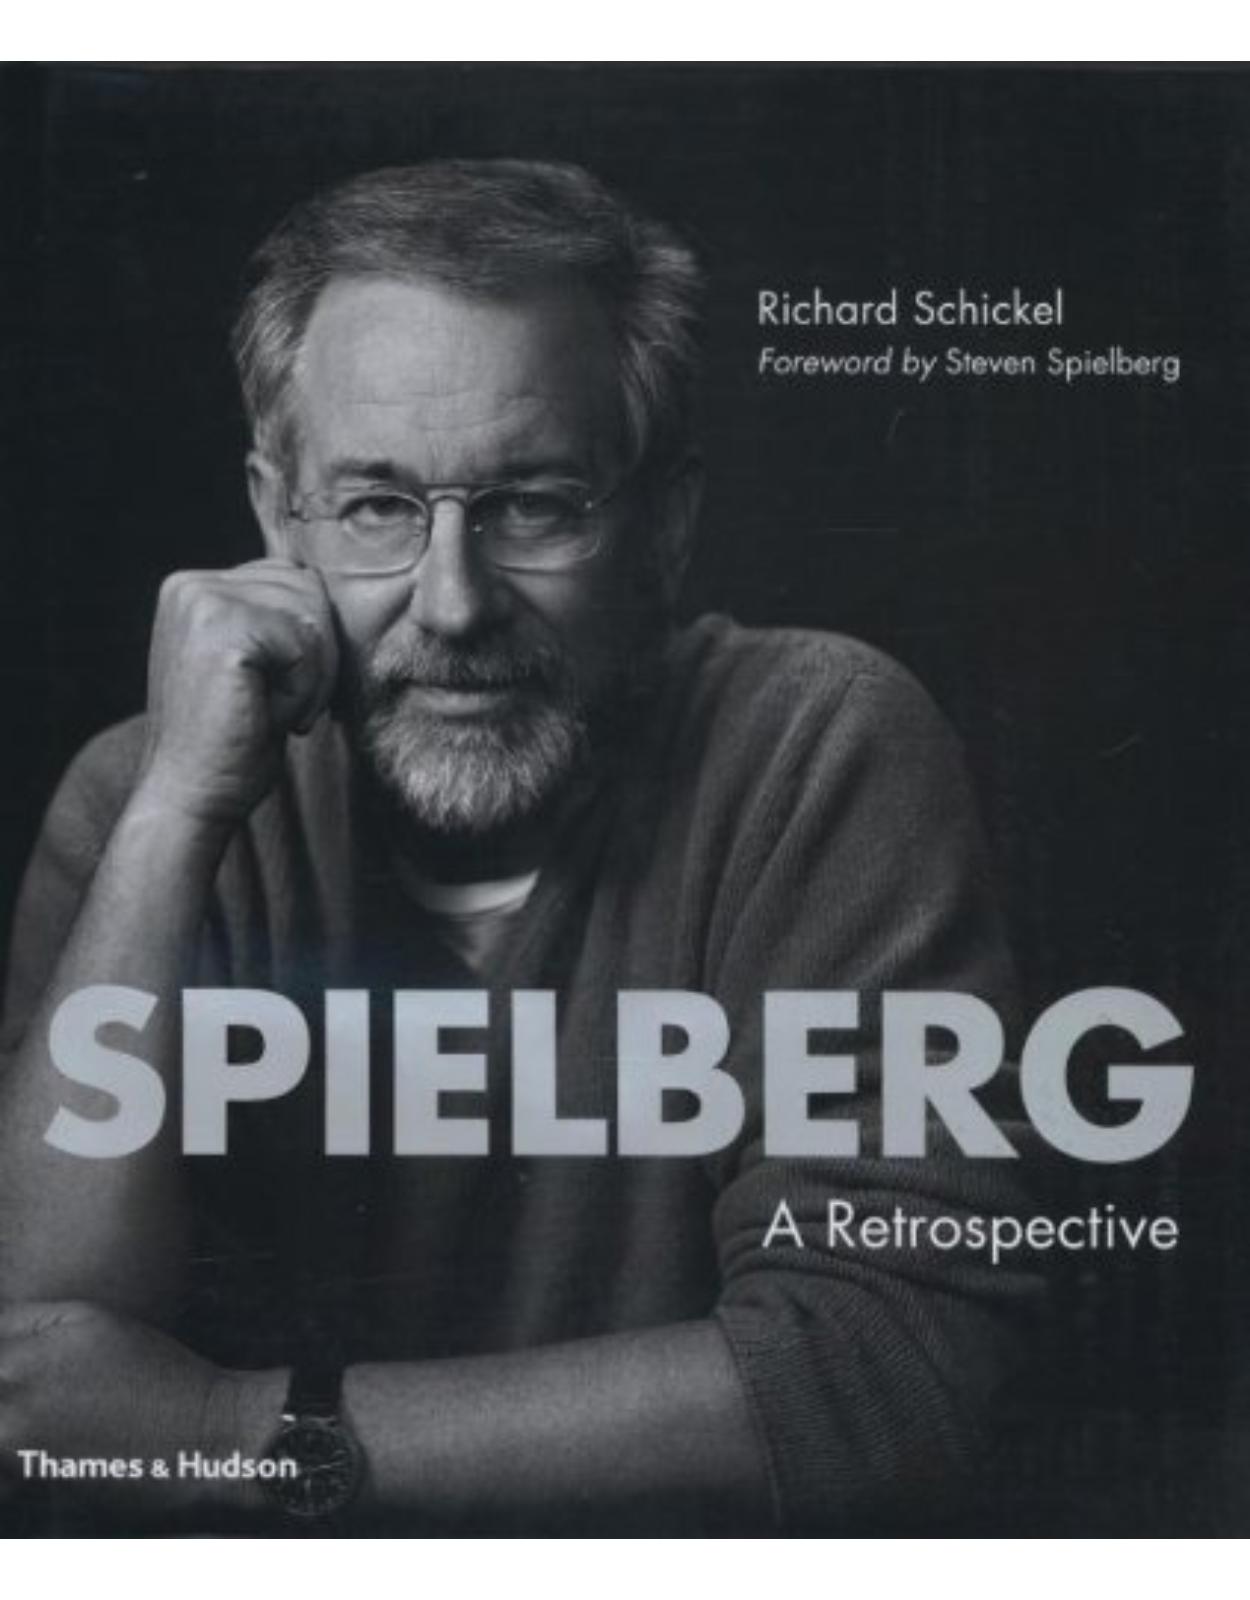 Spielberg: A Retrospective